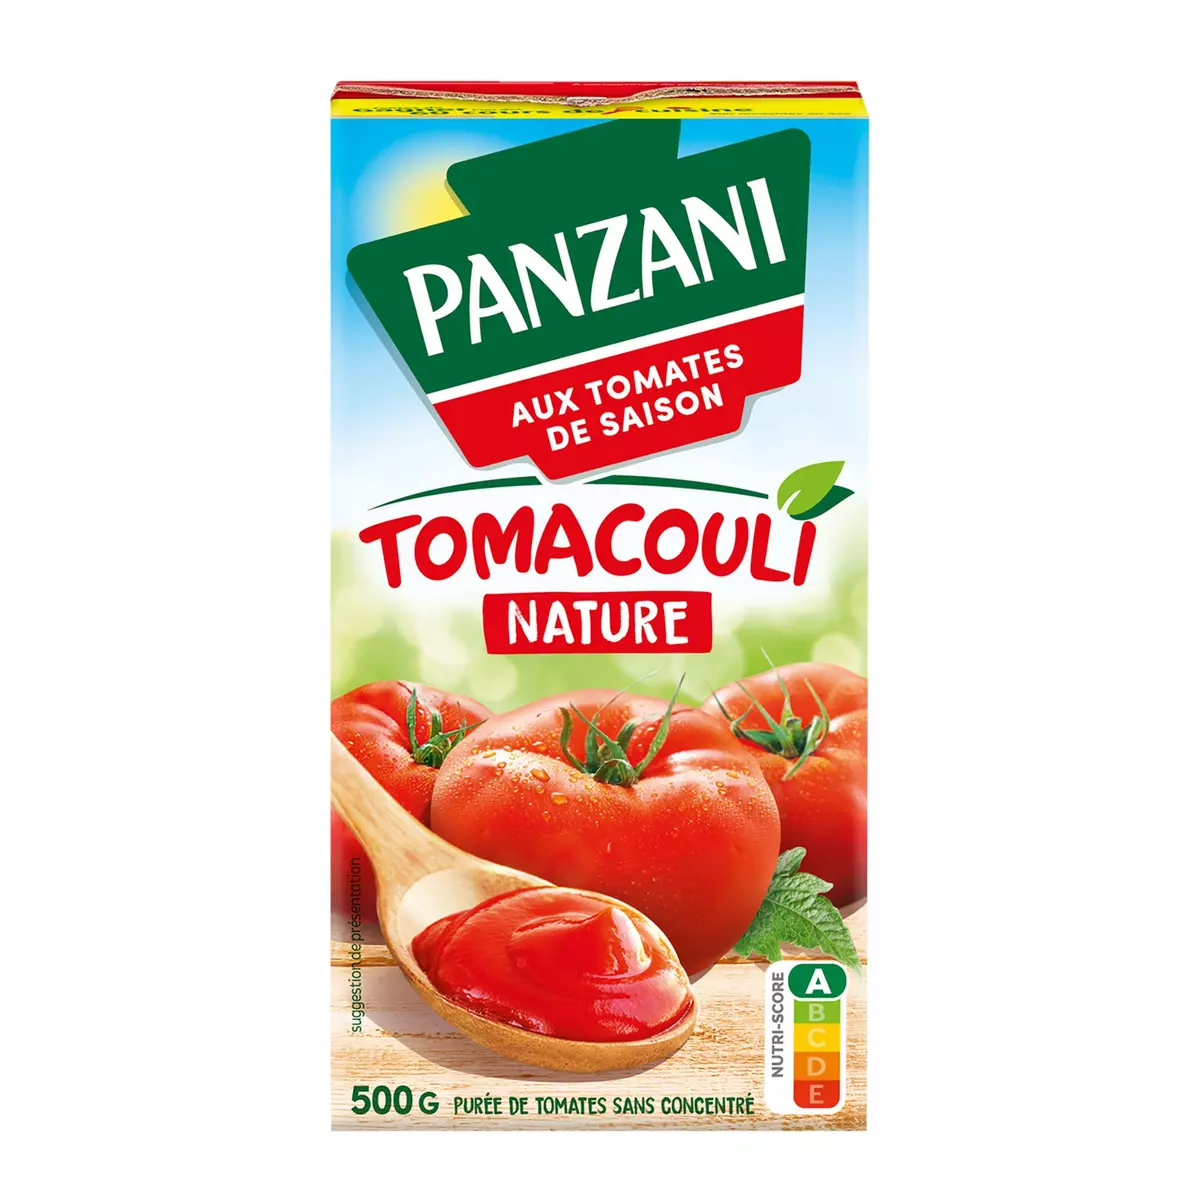 PANZANI Tomacouli purée de tomates fraîches sans conservateur en brique 500g